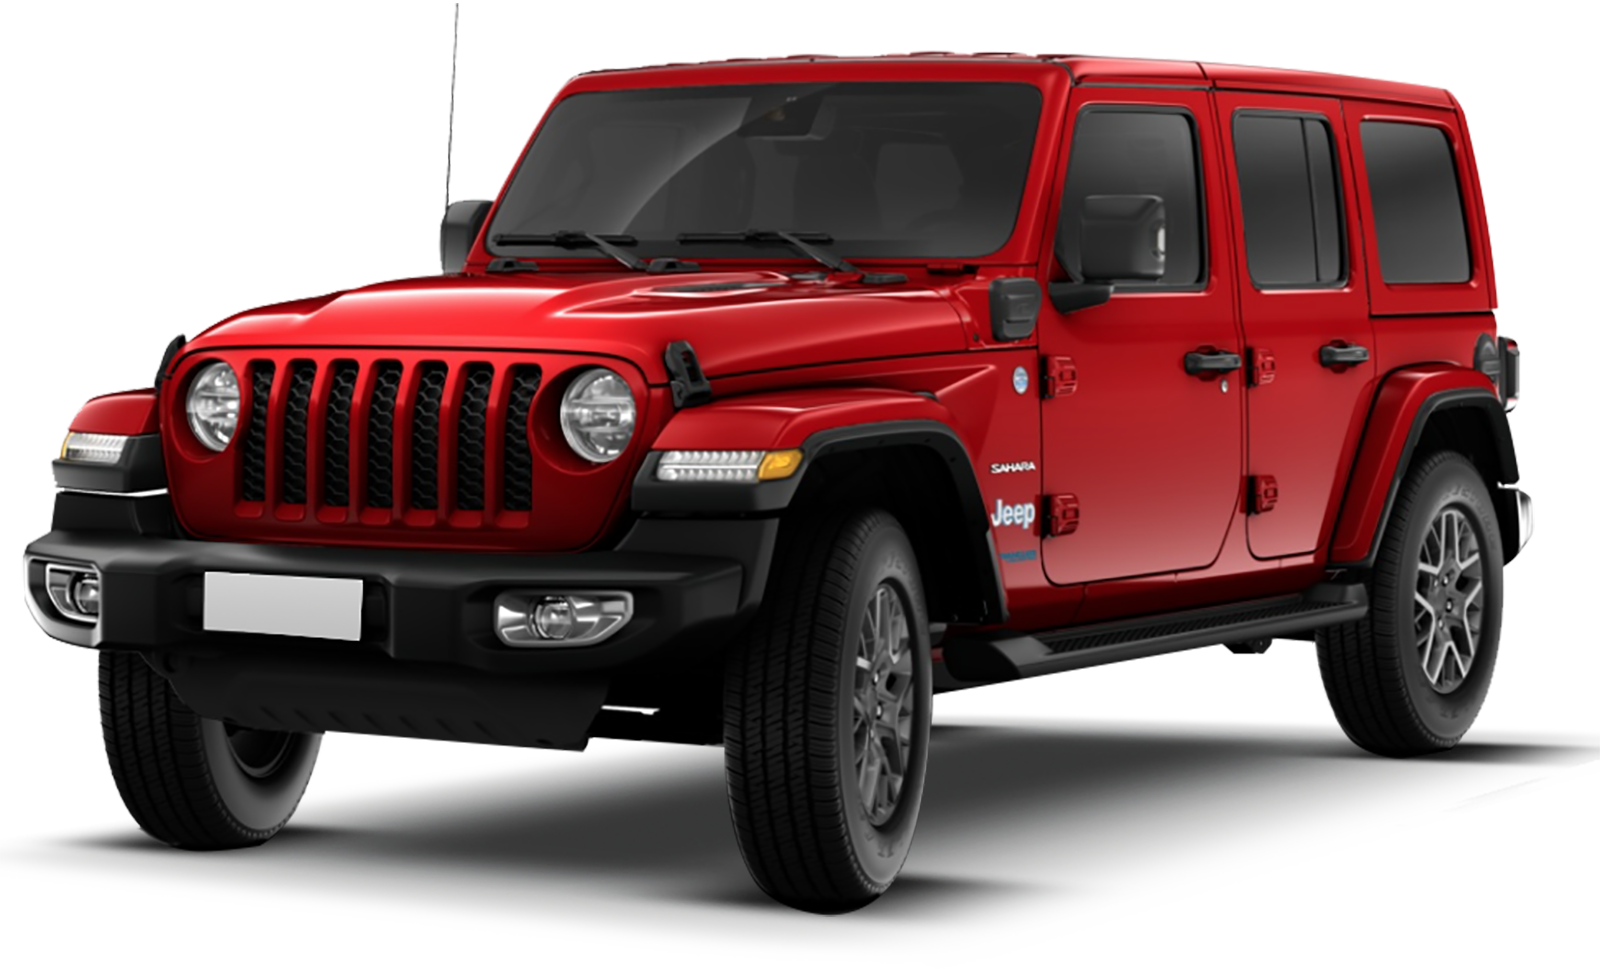 Listino Jeep Wrangler Unlimited prezzo - scheda tecnica - consumi - foto -  